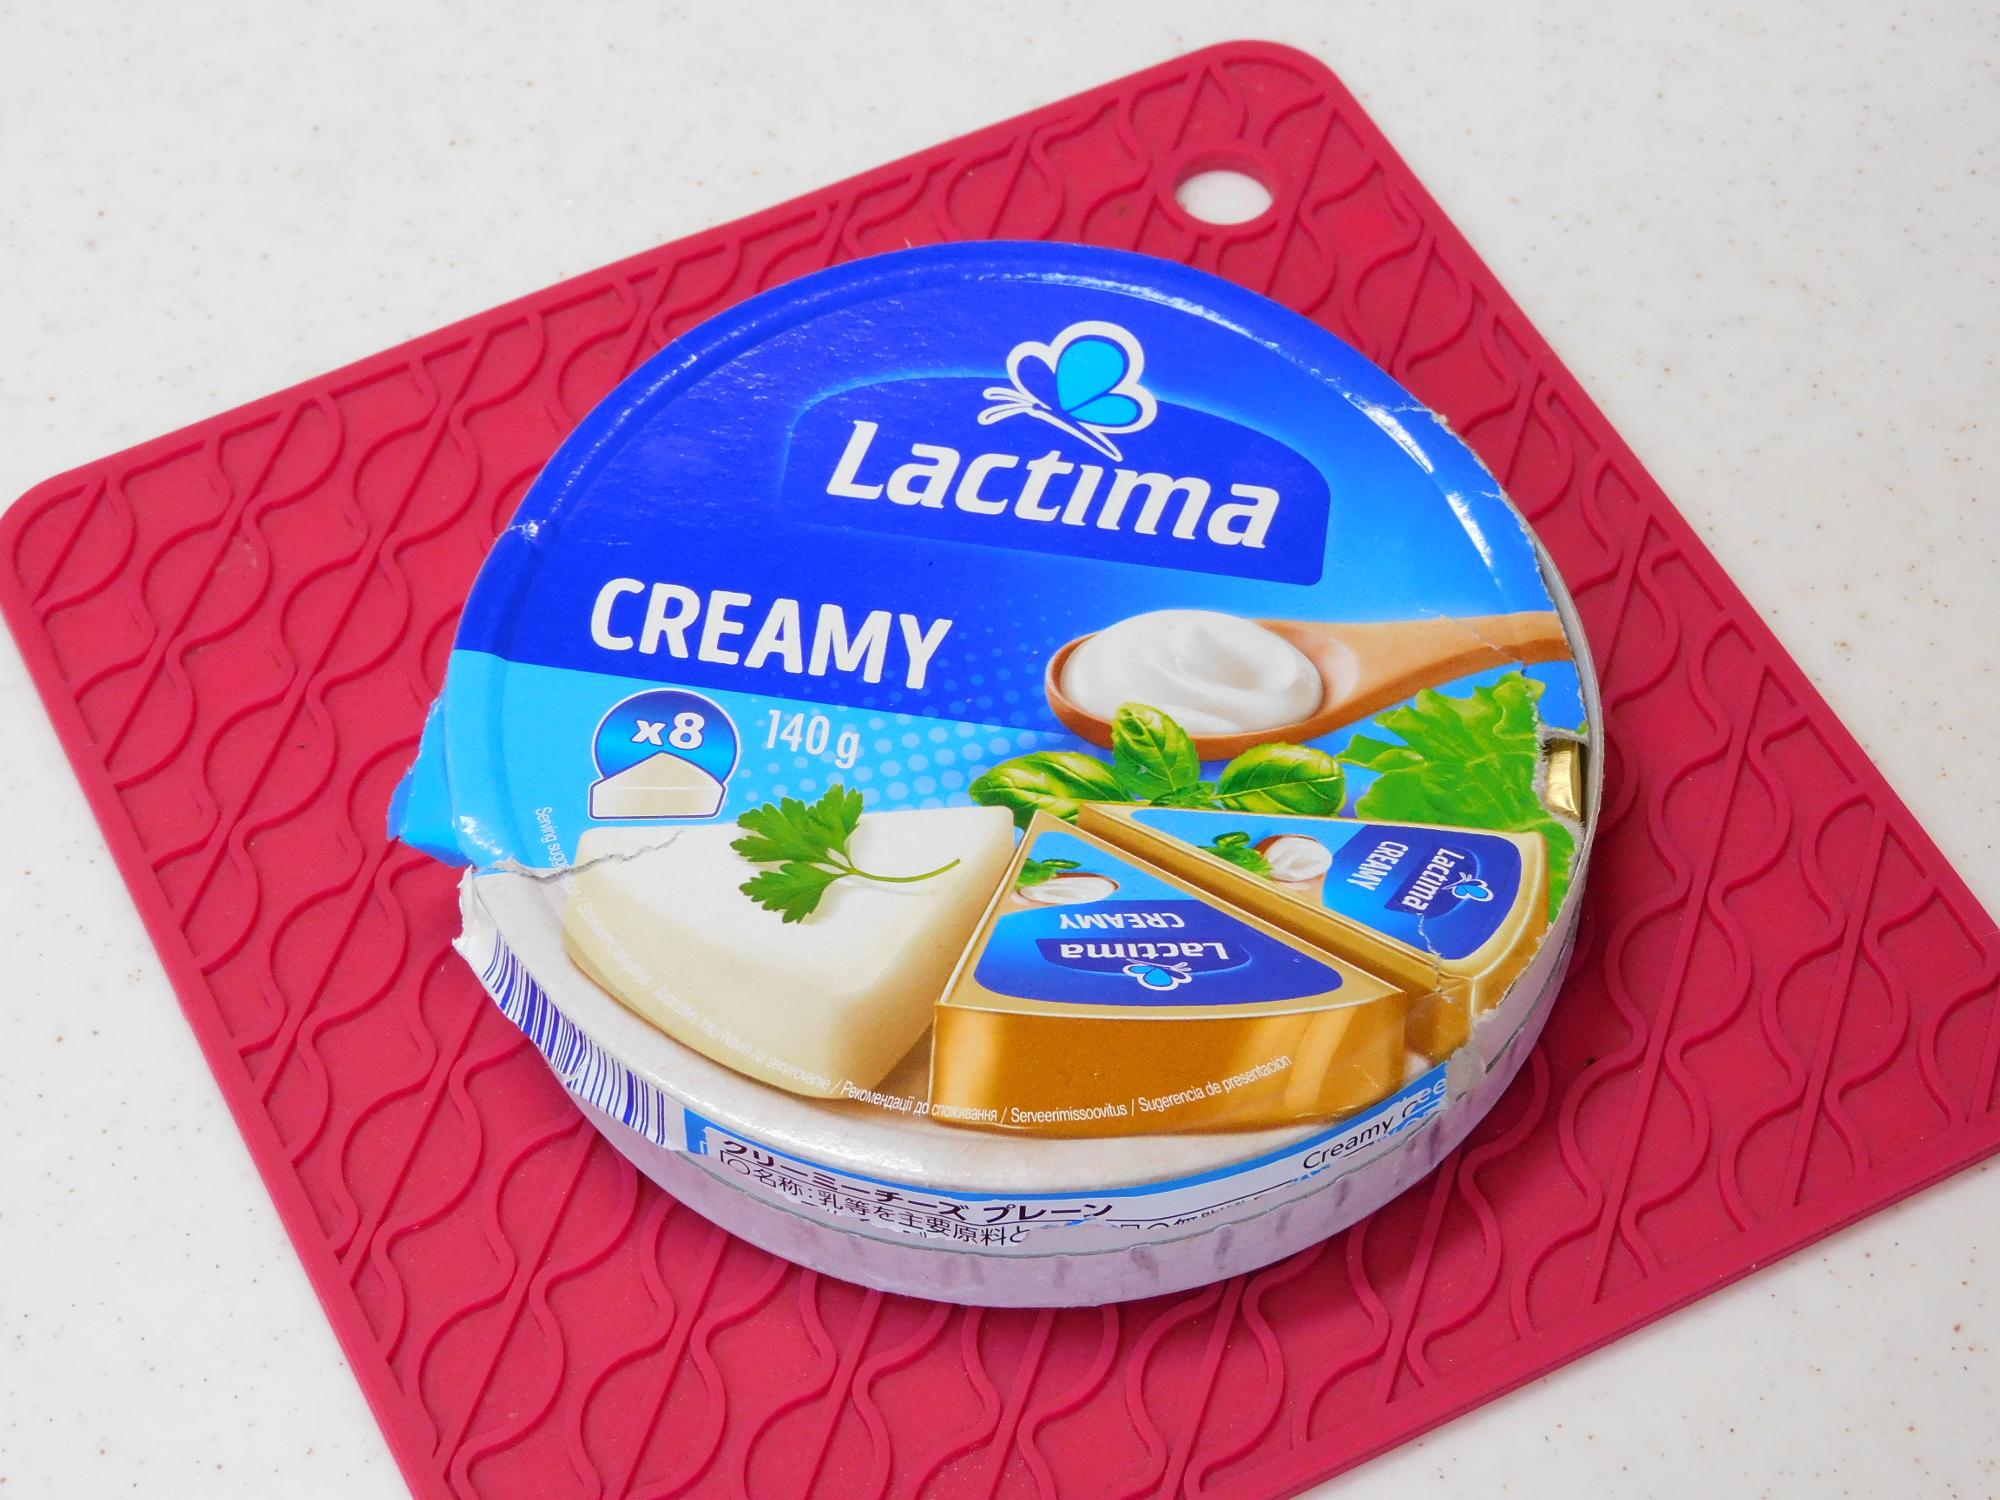 ポーランドのチーズメーカーlactimaさん製造